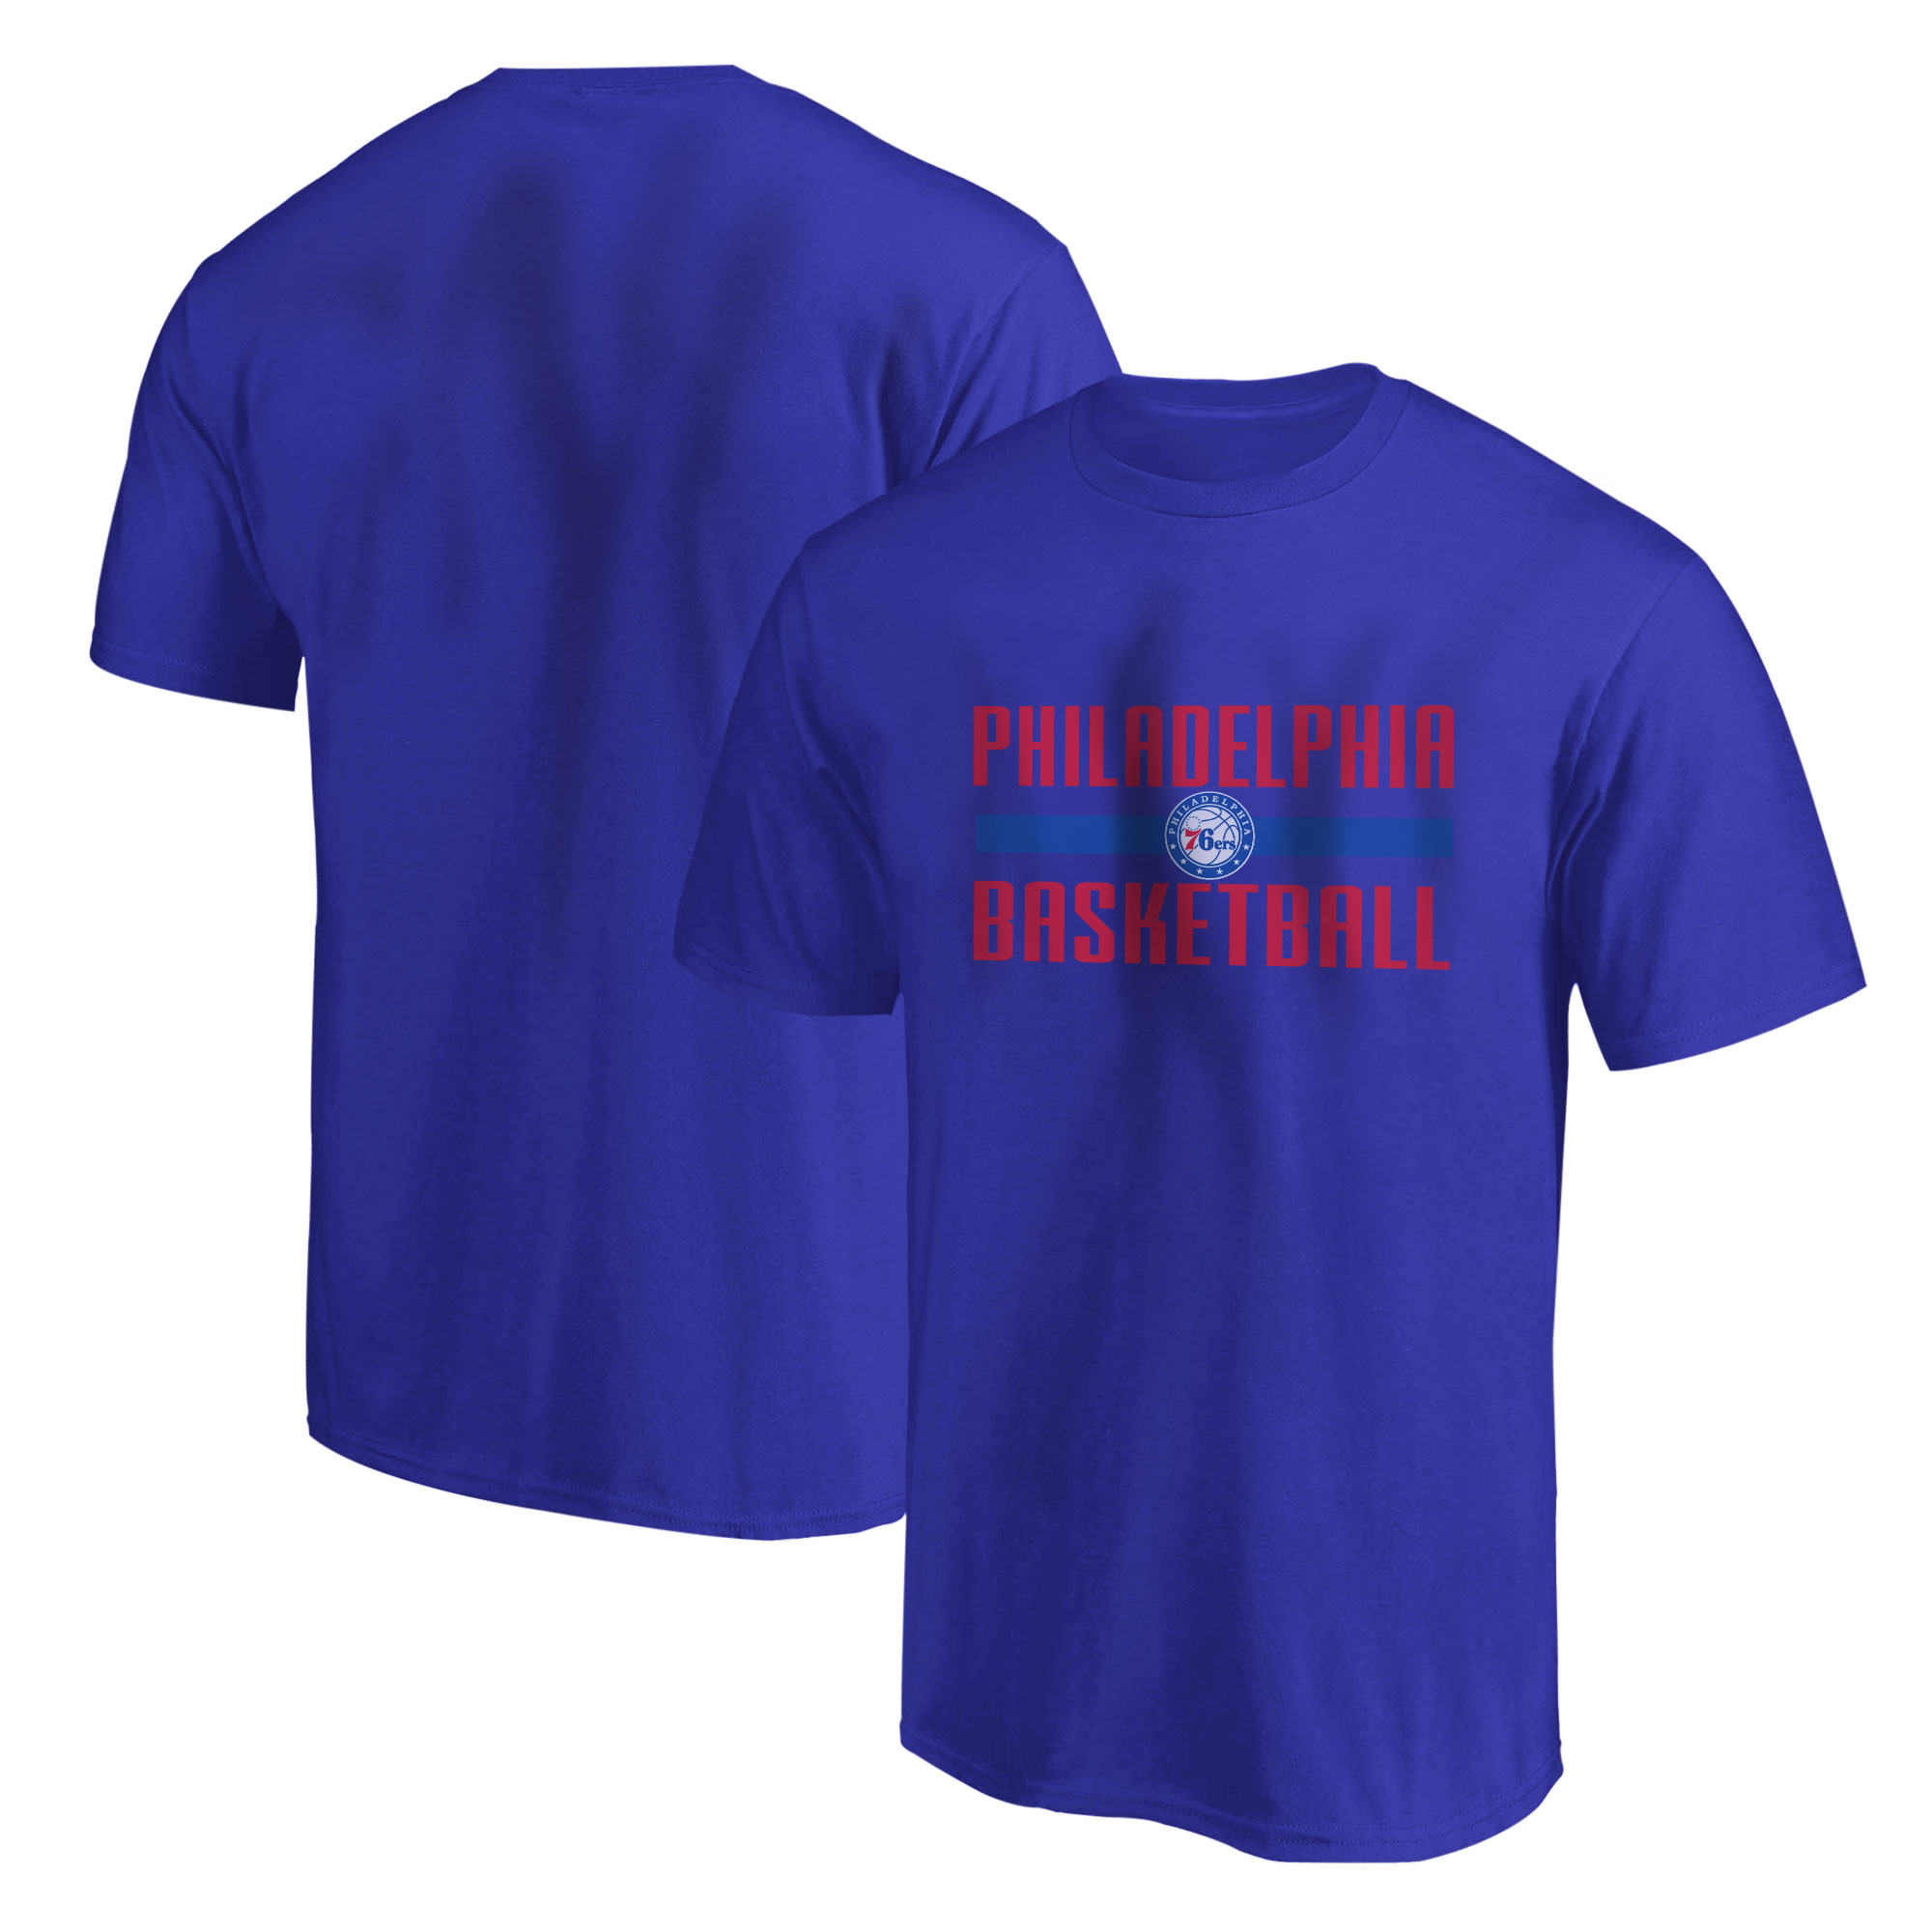 Philadelphia Basketball Tshirt (TSH-BLU-915)